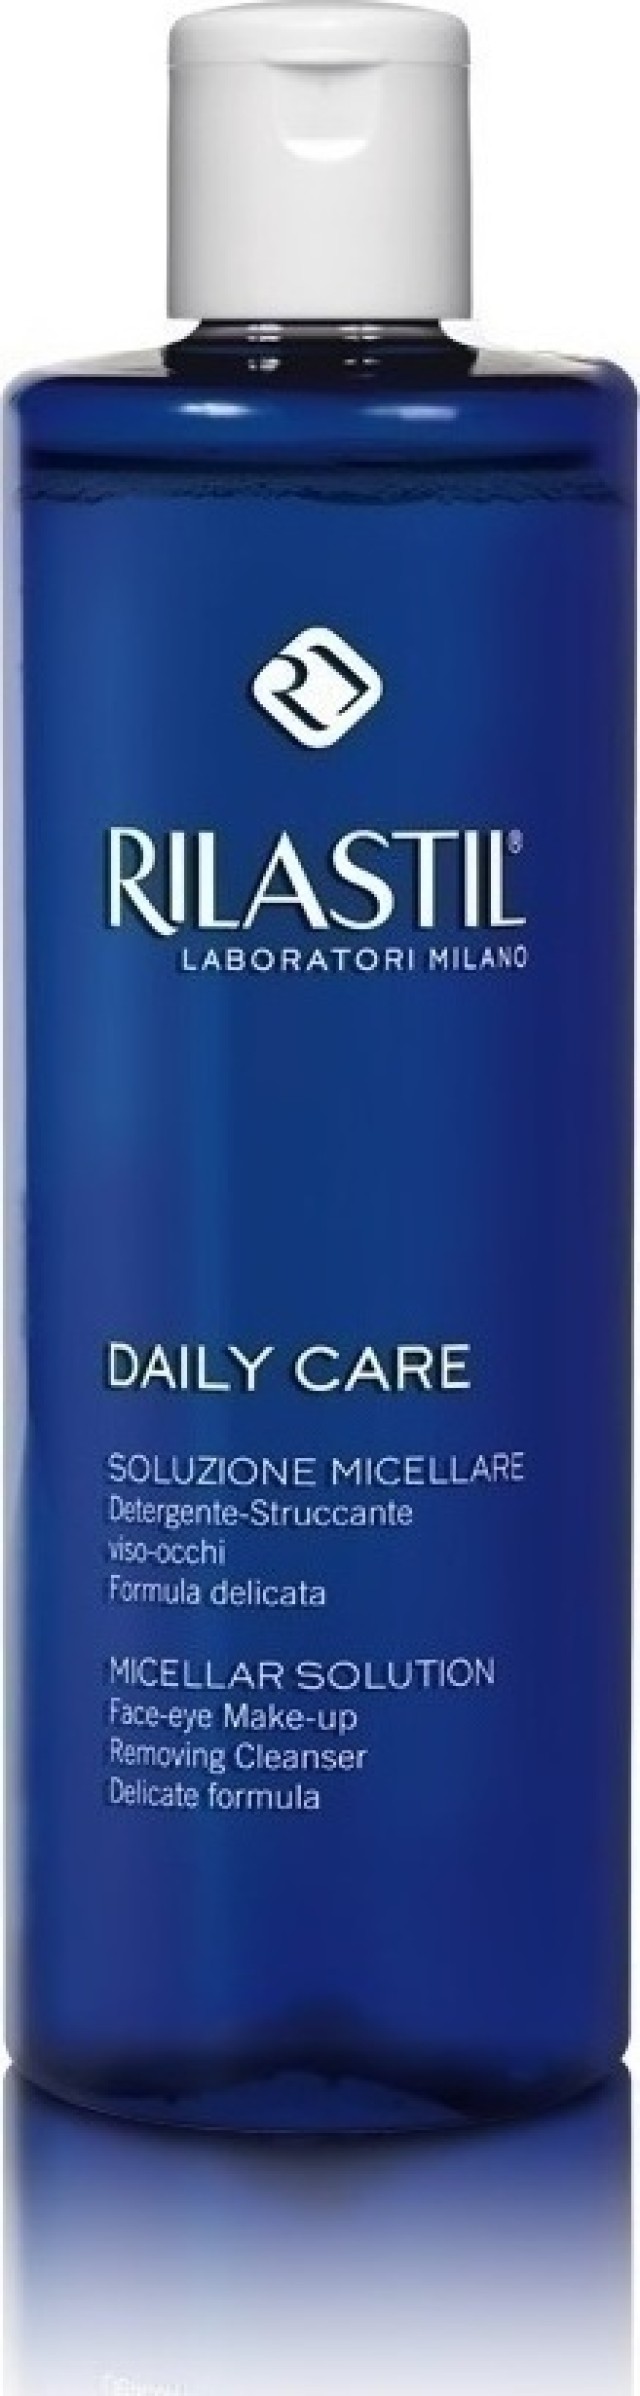 RILASTIL Daily Care Micellar Solution Καθαριστικό Ντεμακιγιάζ Προσώπου & Ματιών Για Όλους Τους Τύπους Επιδερμίδας, 250ml